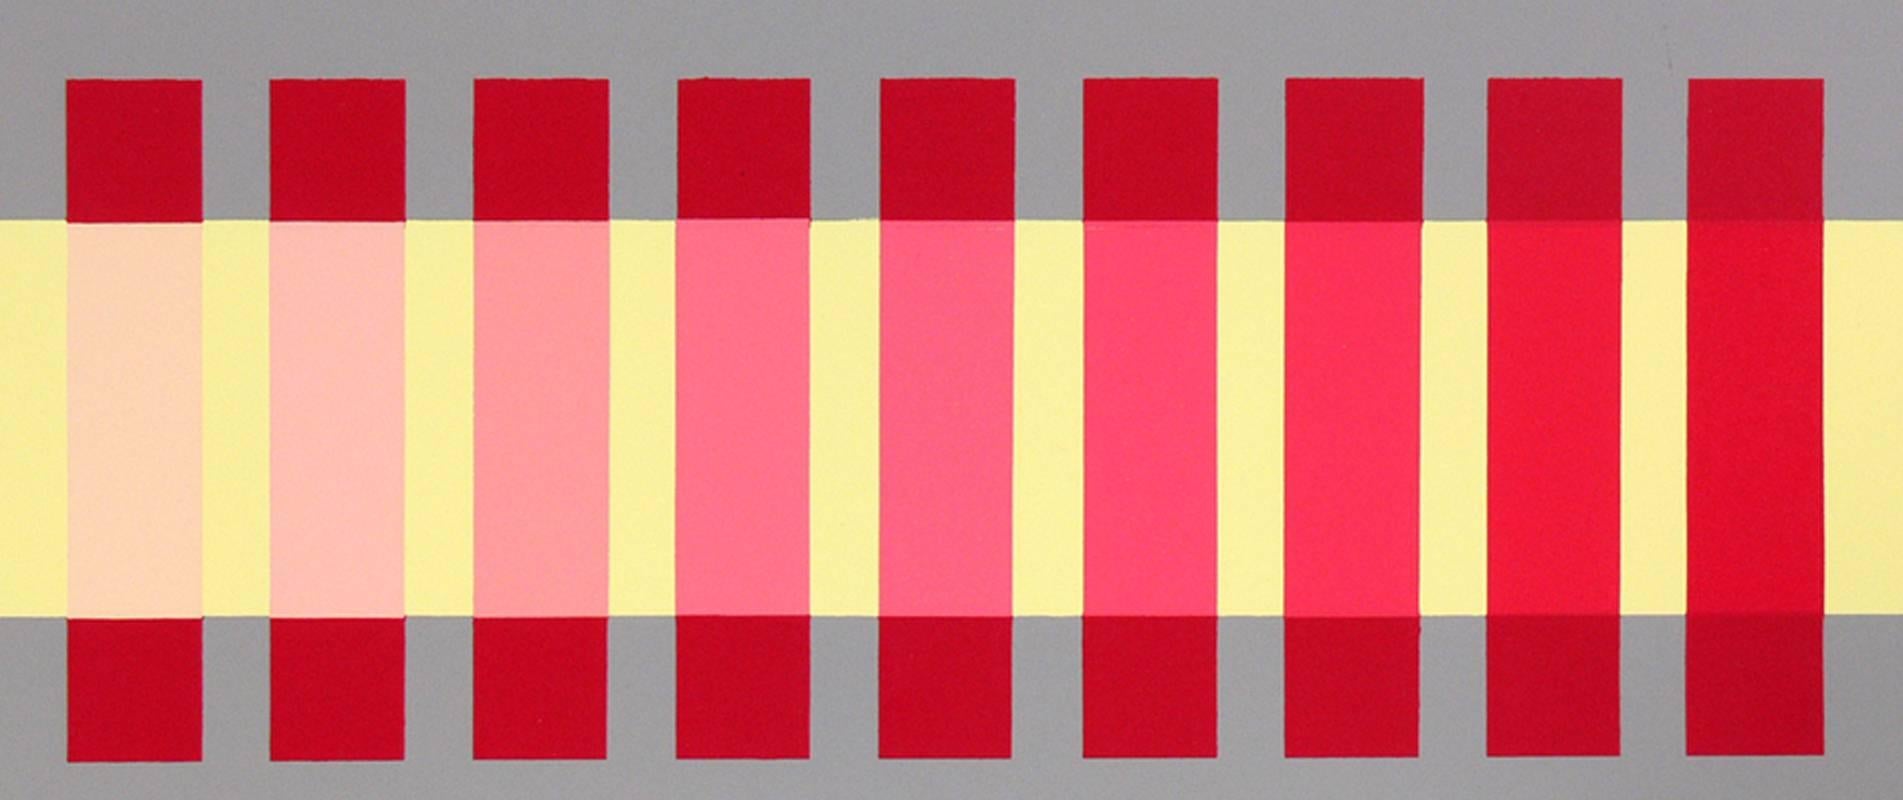 Lithographie abstraite de Josef Albers à partir d'Interaction of color, vers les années 1960.